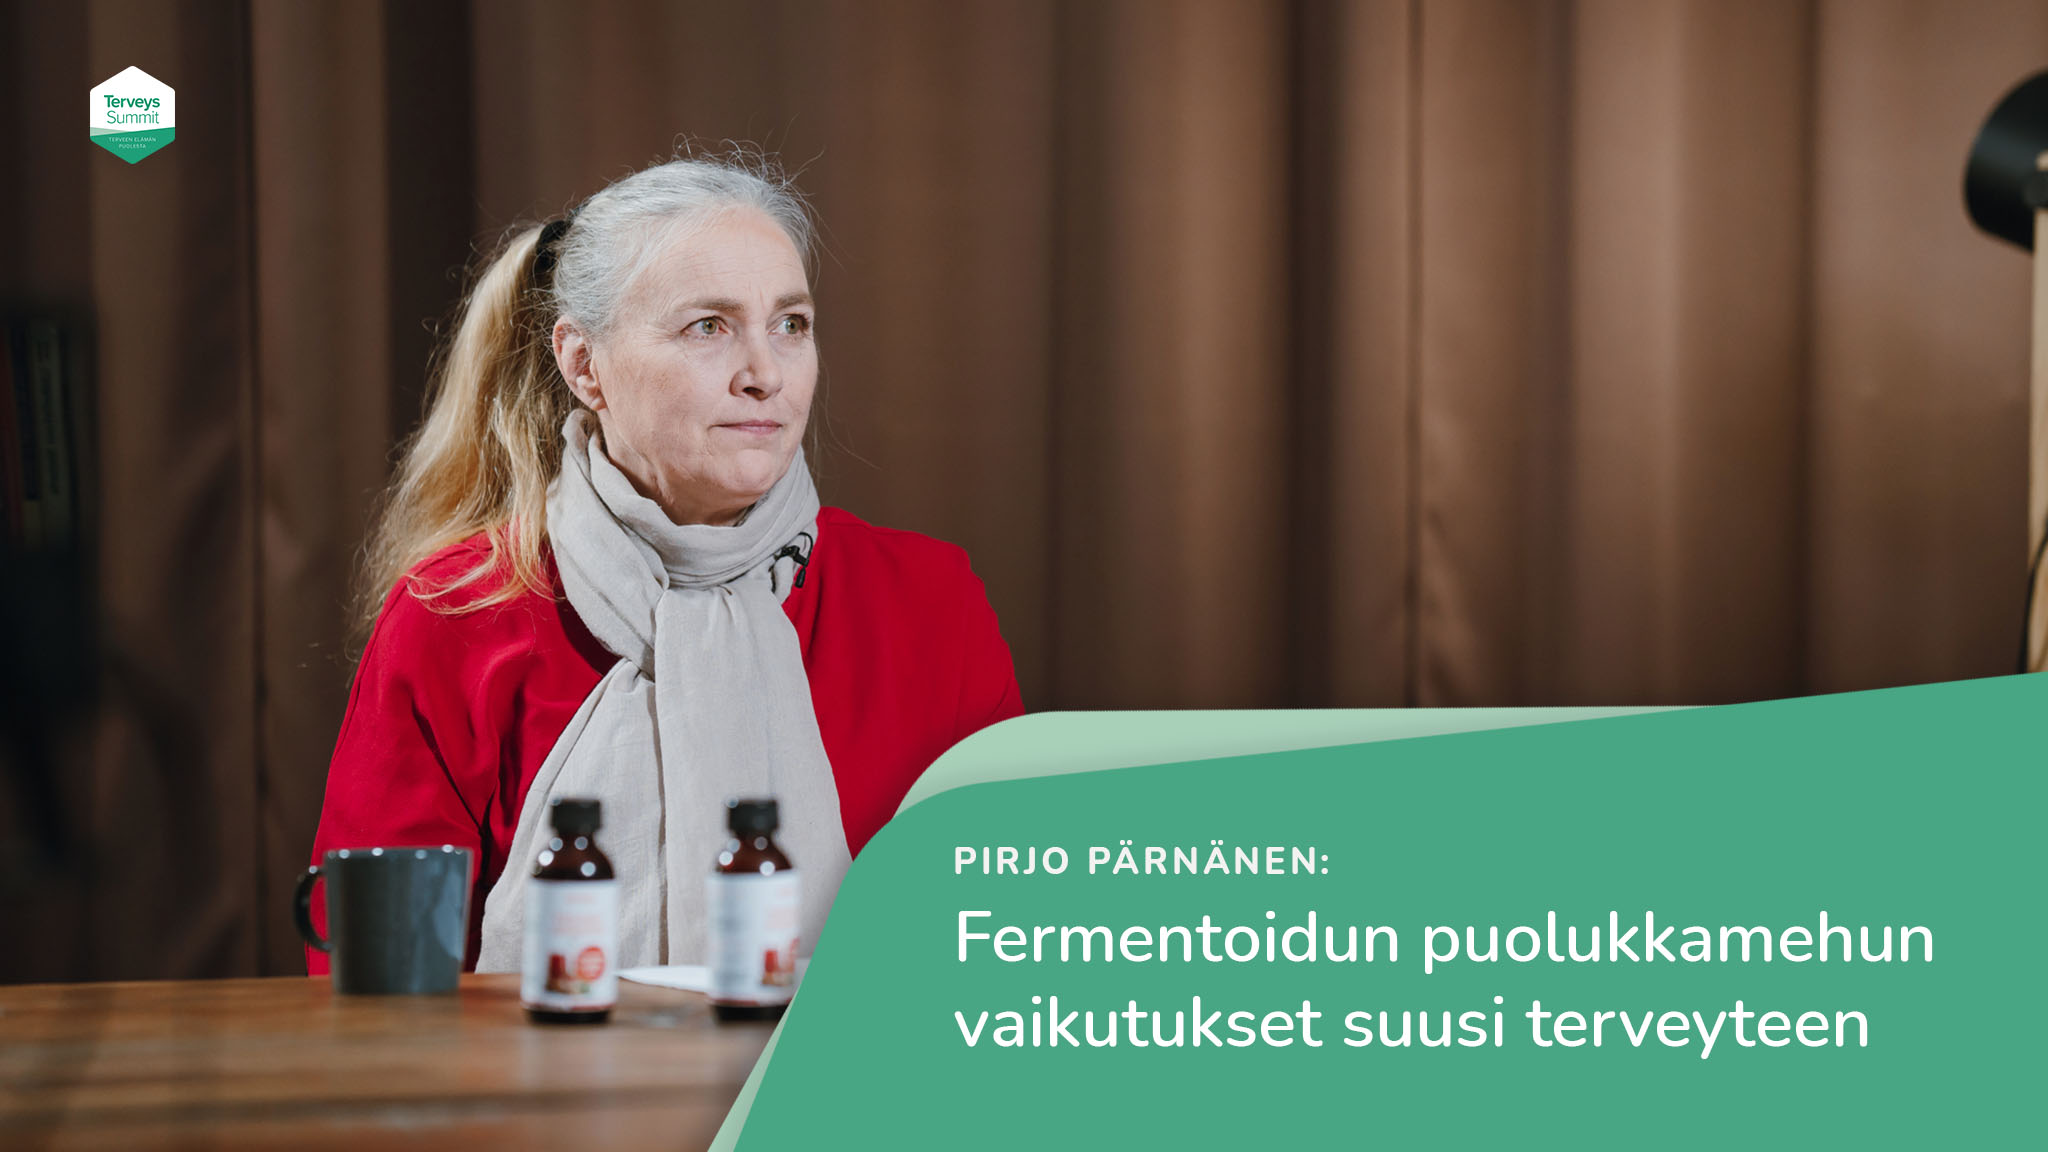 Fermentoidun puolukkamehun vaikutukset suusi terveyteen – Pirjo Pärnänen – Hammaslääkäri, filosofian tohtori